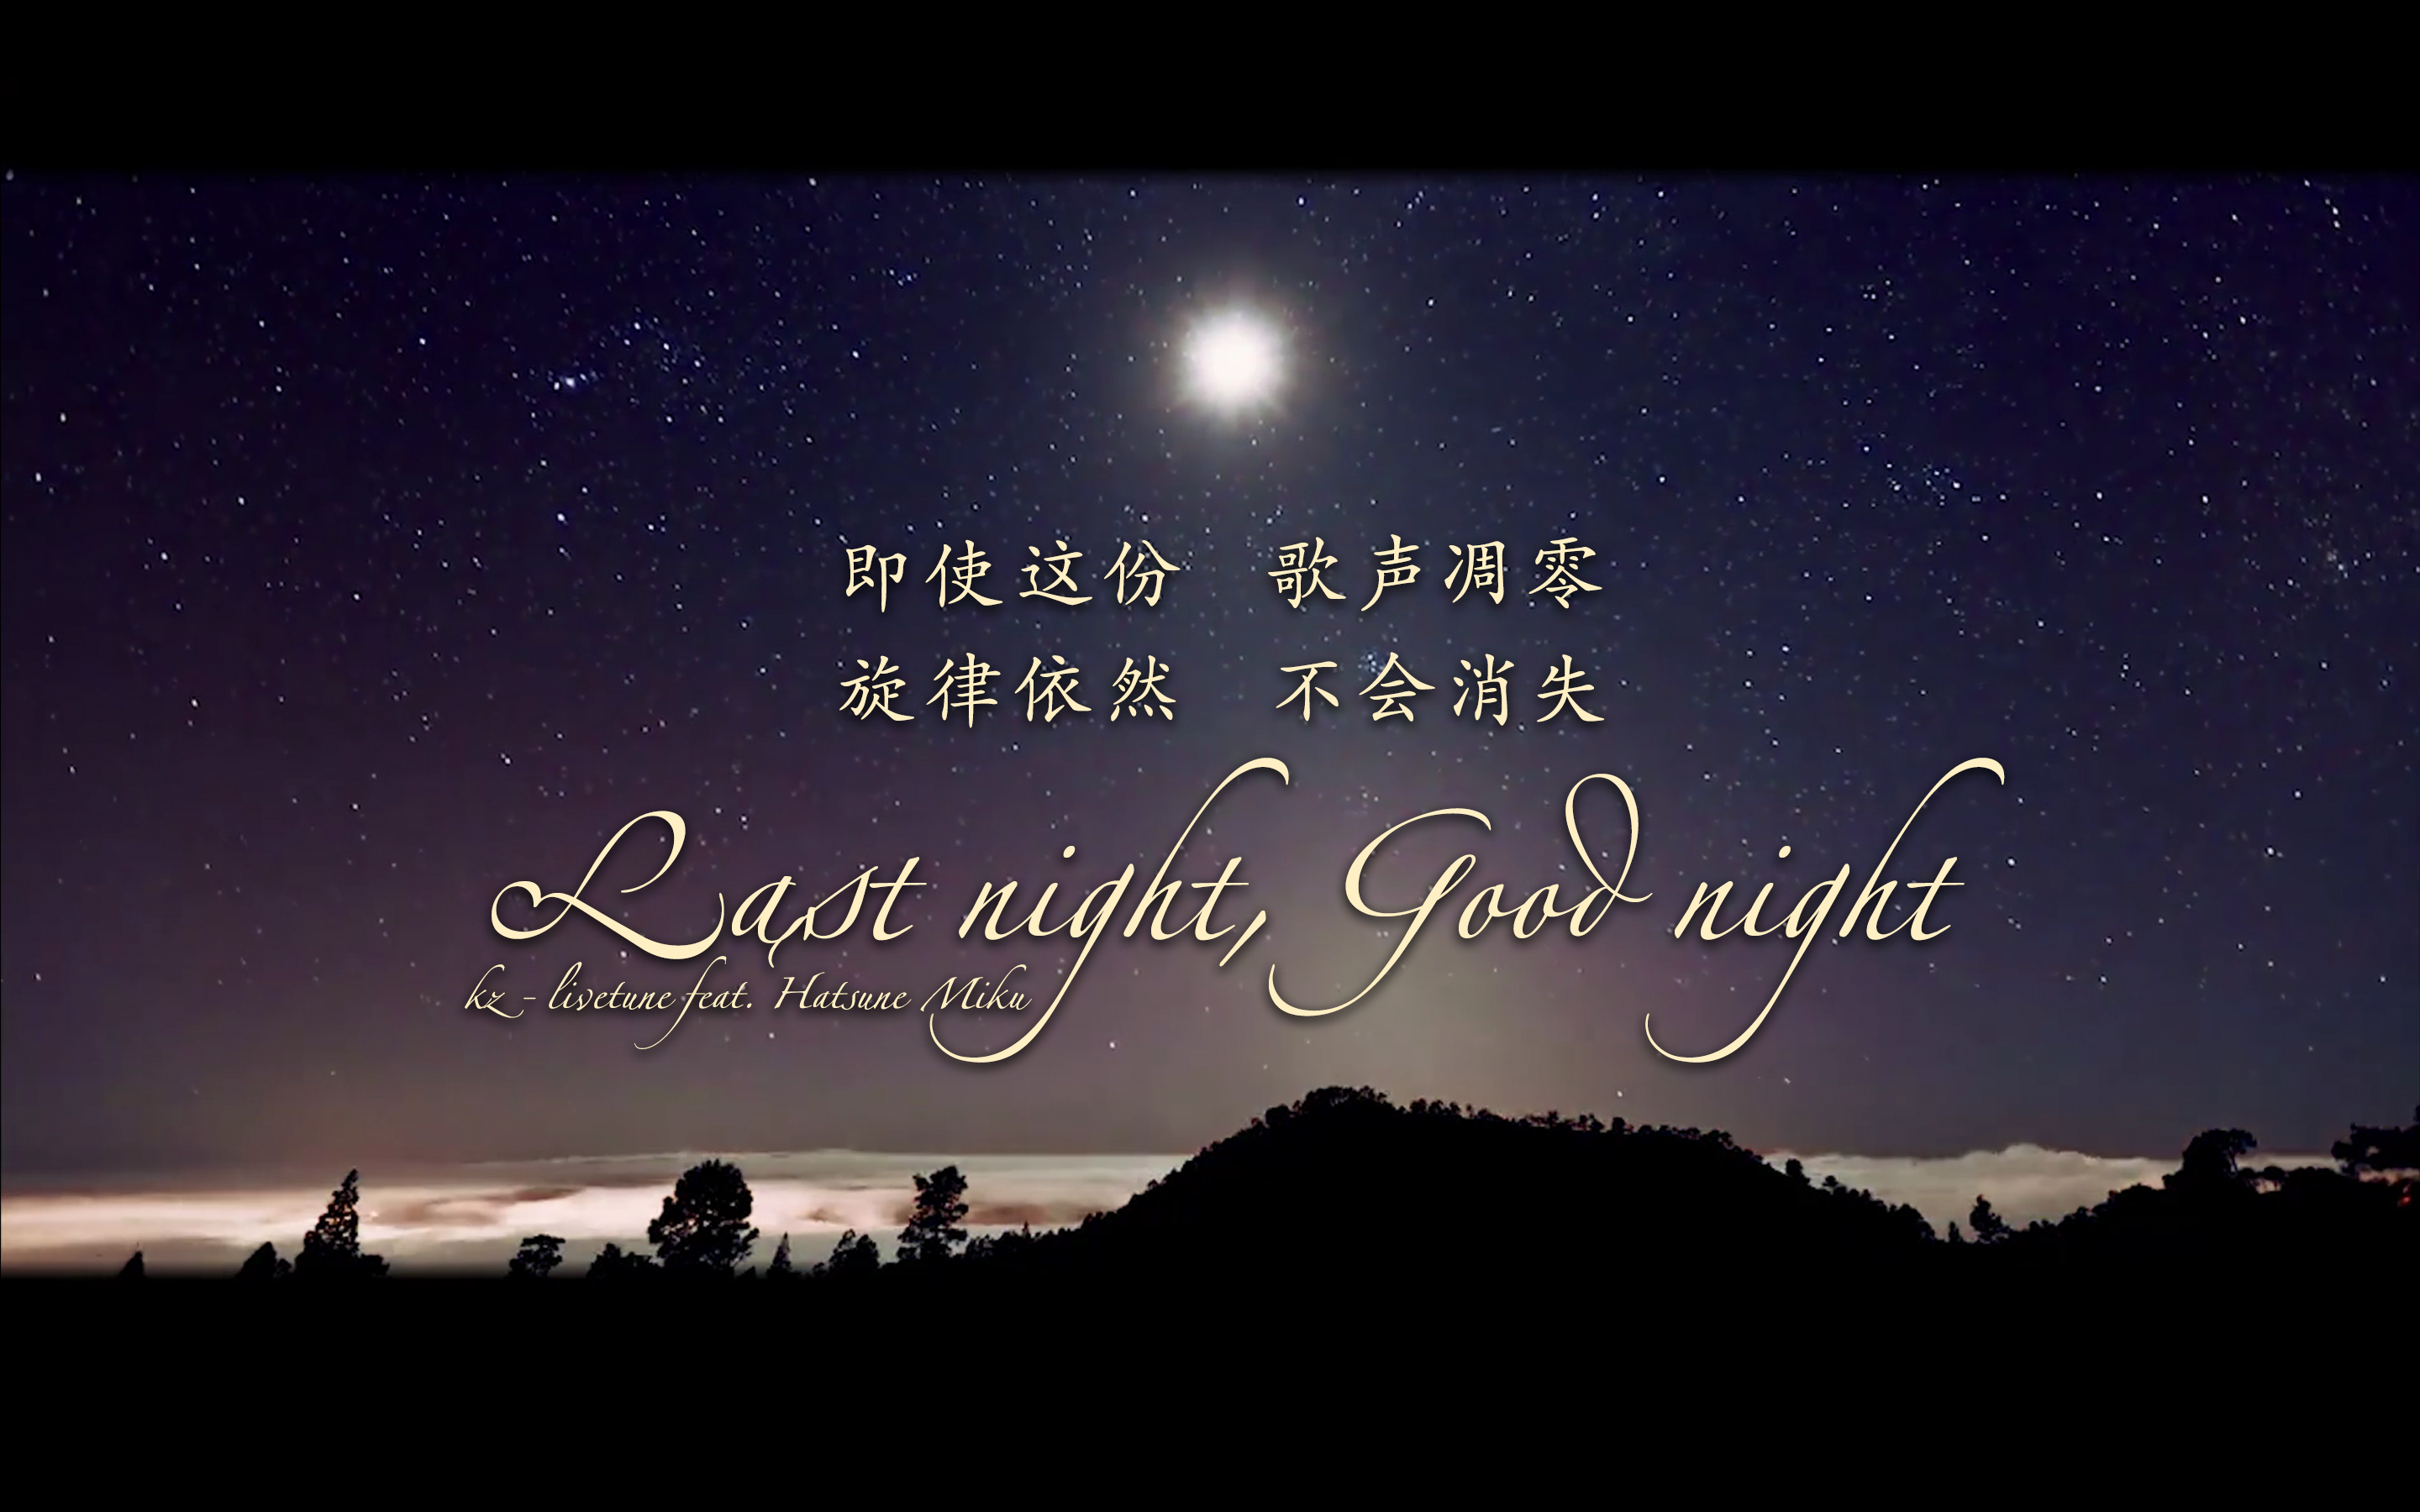 Last night, Good night (zh)